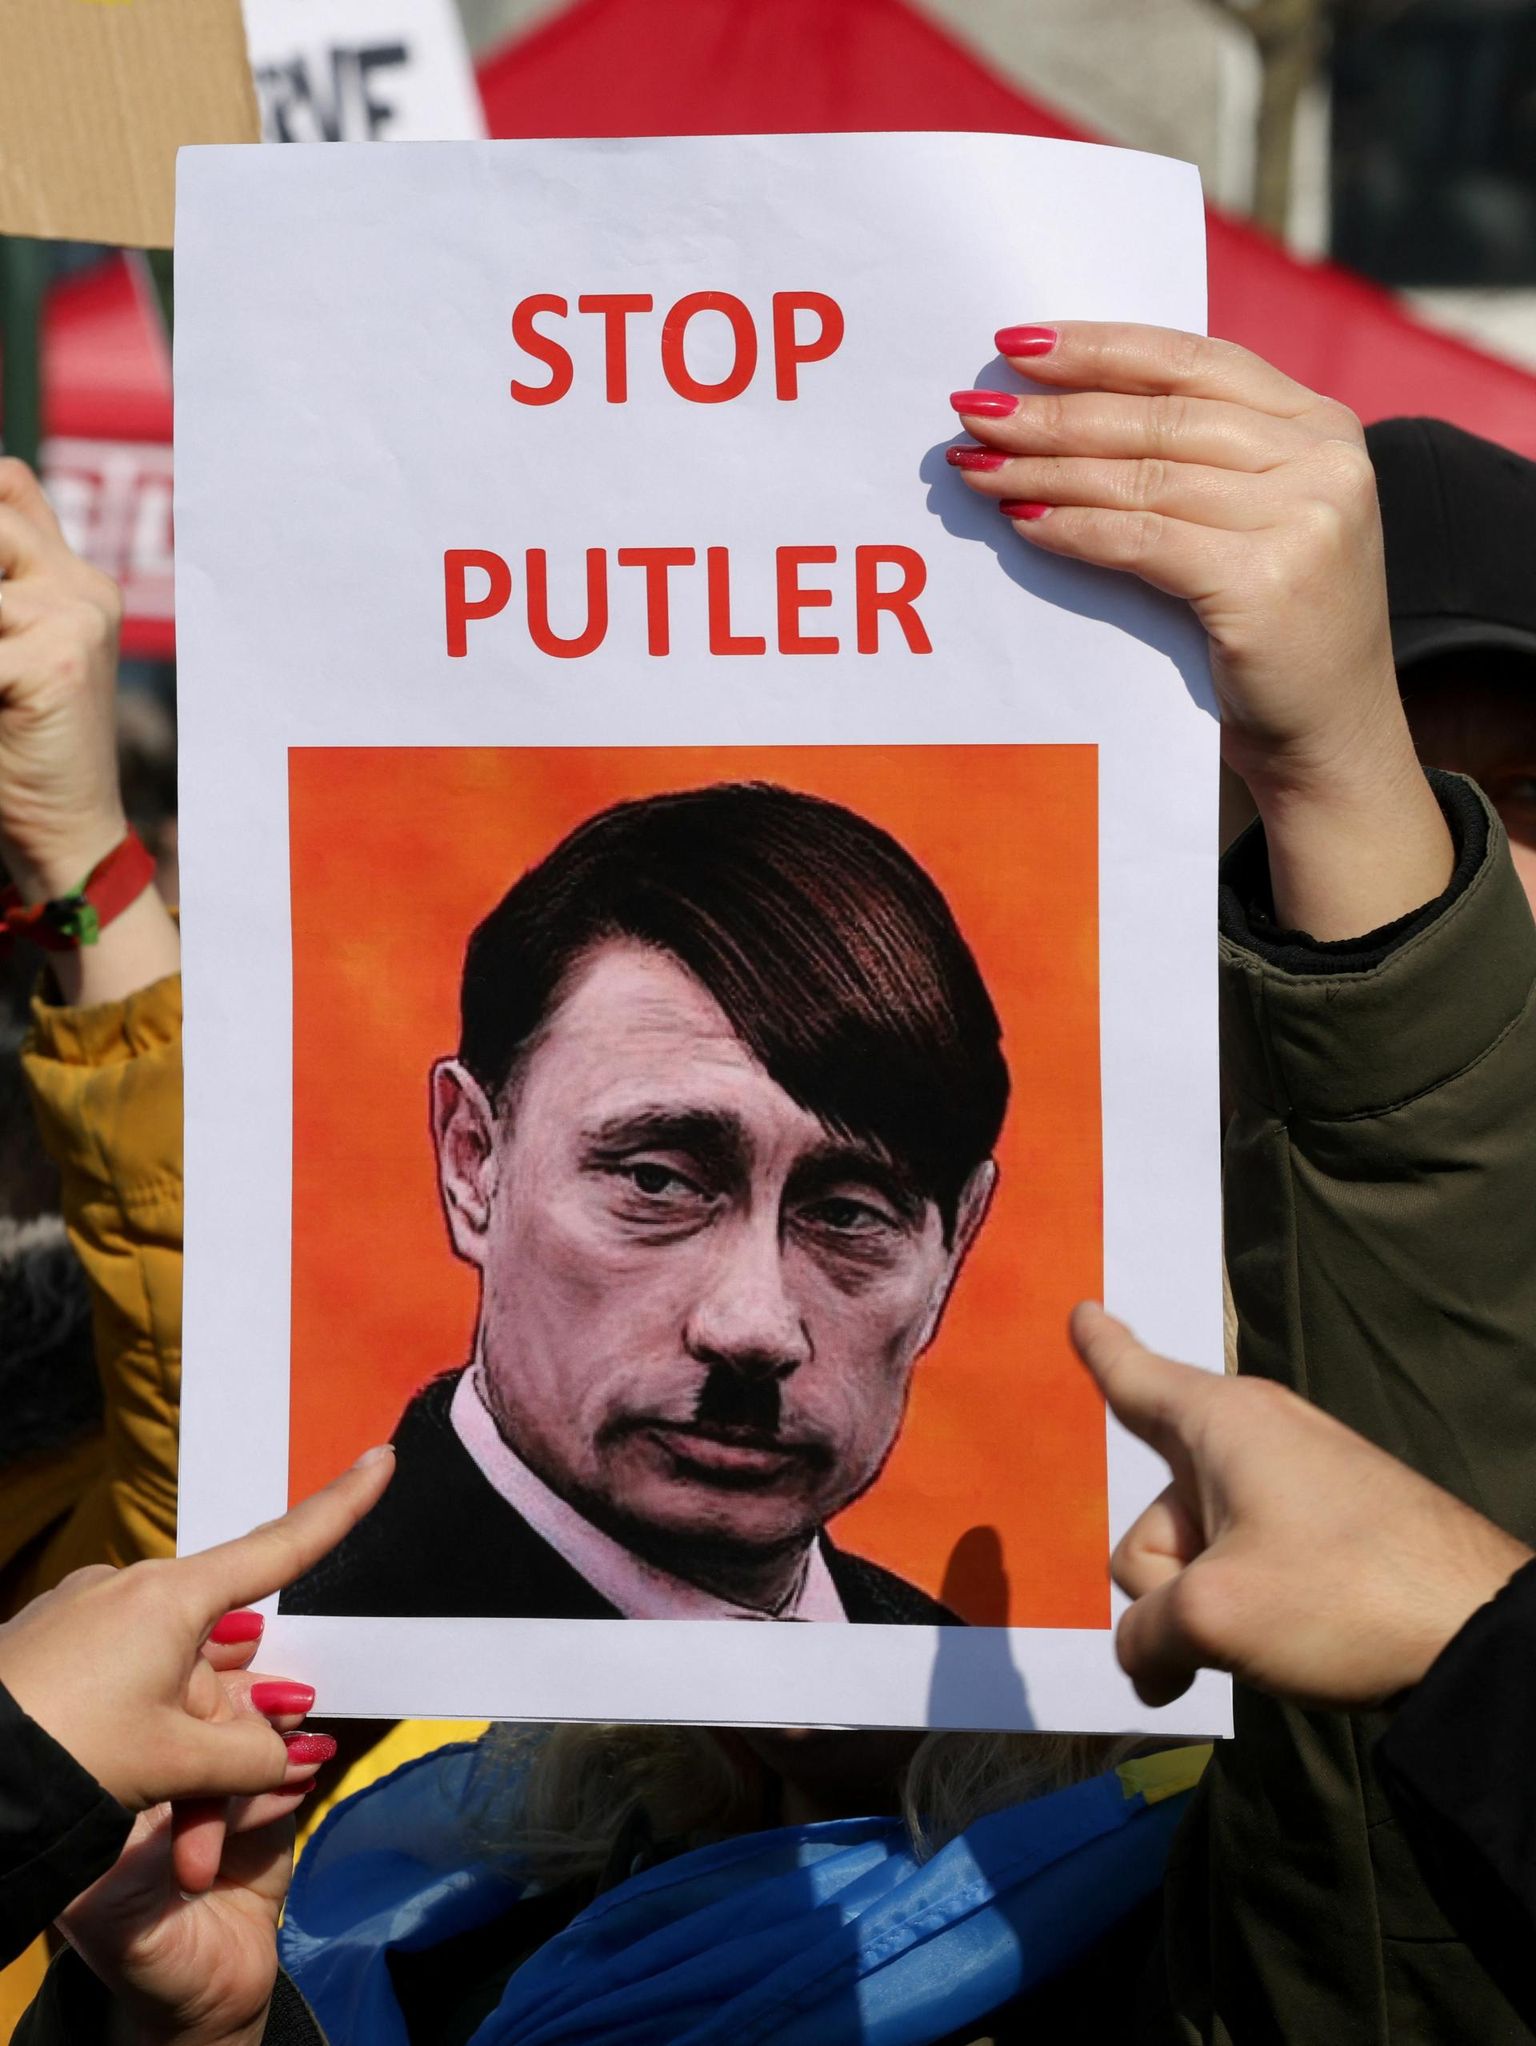 Praeguseks on Hitler Putinist suurem massimõrvar, aga kui Putin kasutab oma kaotuse vältimiseks tuumarelva, siis läheb ta ette. Meeleavaldajad on kokku miksinud Putini ning Hitleri näo iseloomulikud tunnused.